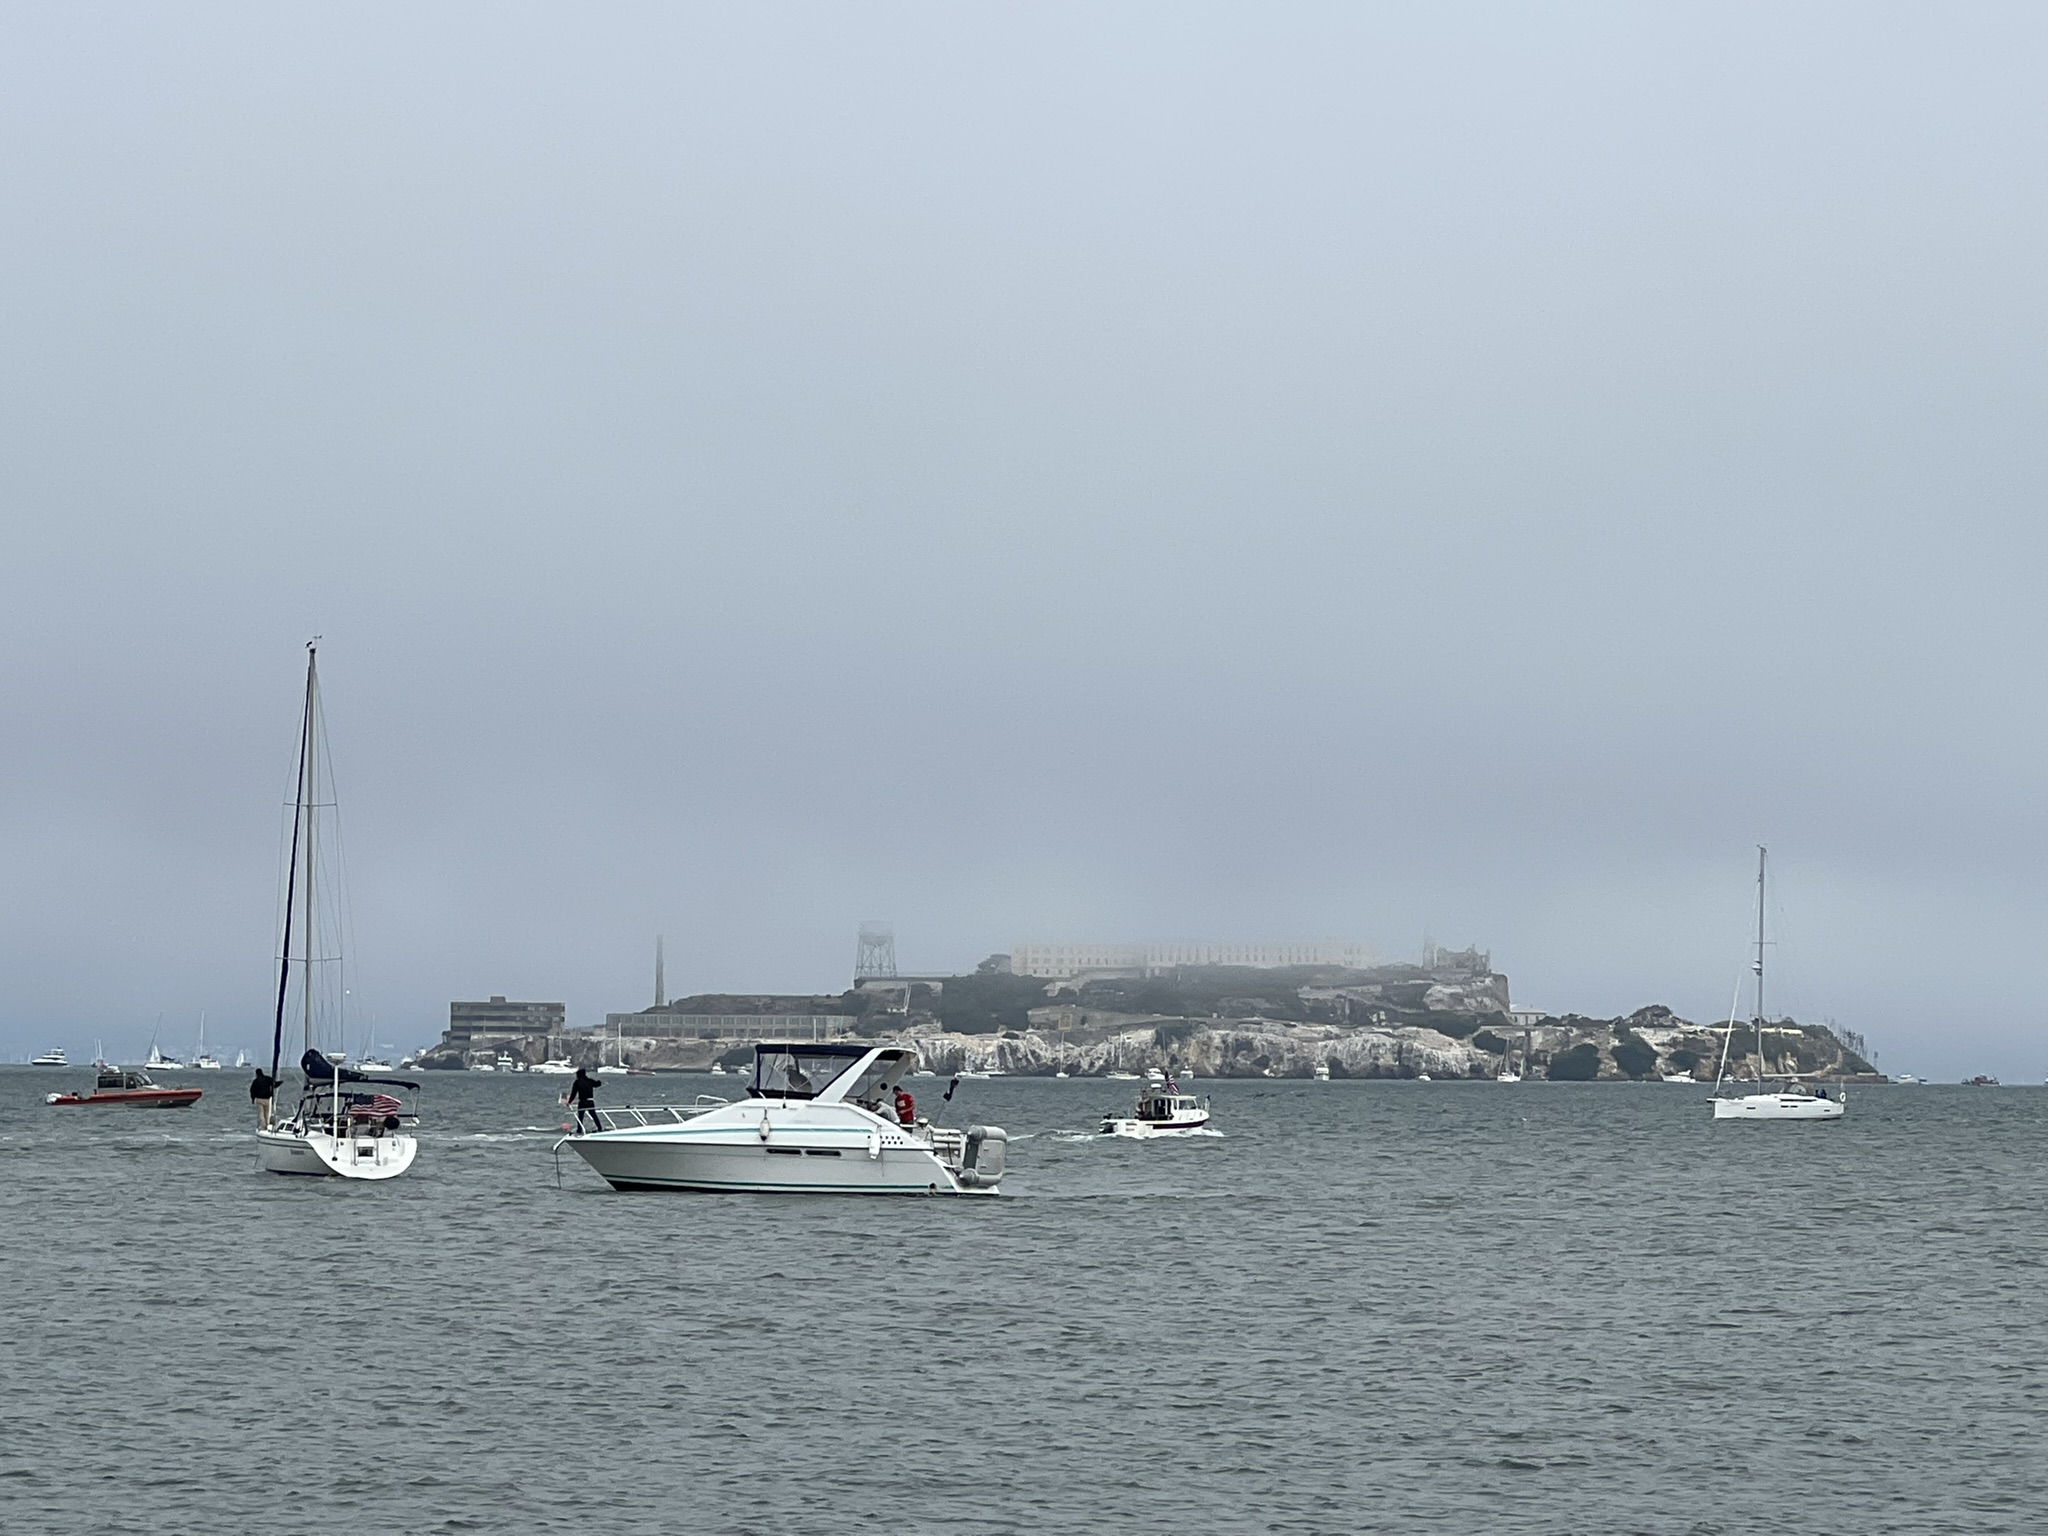 来到了 Marina Green Waterfront 等待观看航展，但是大雾笼罩，甚至看不清对面的恶魔岛